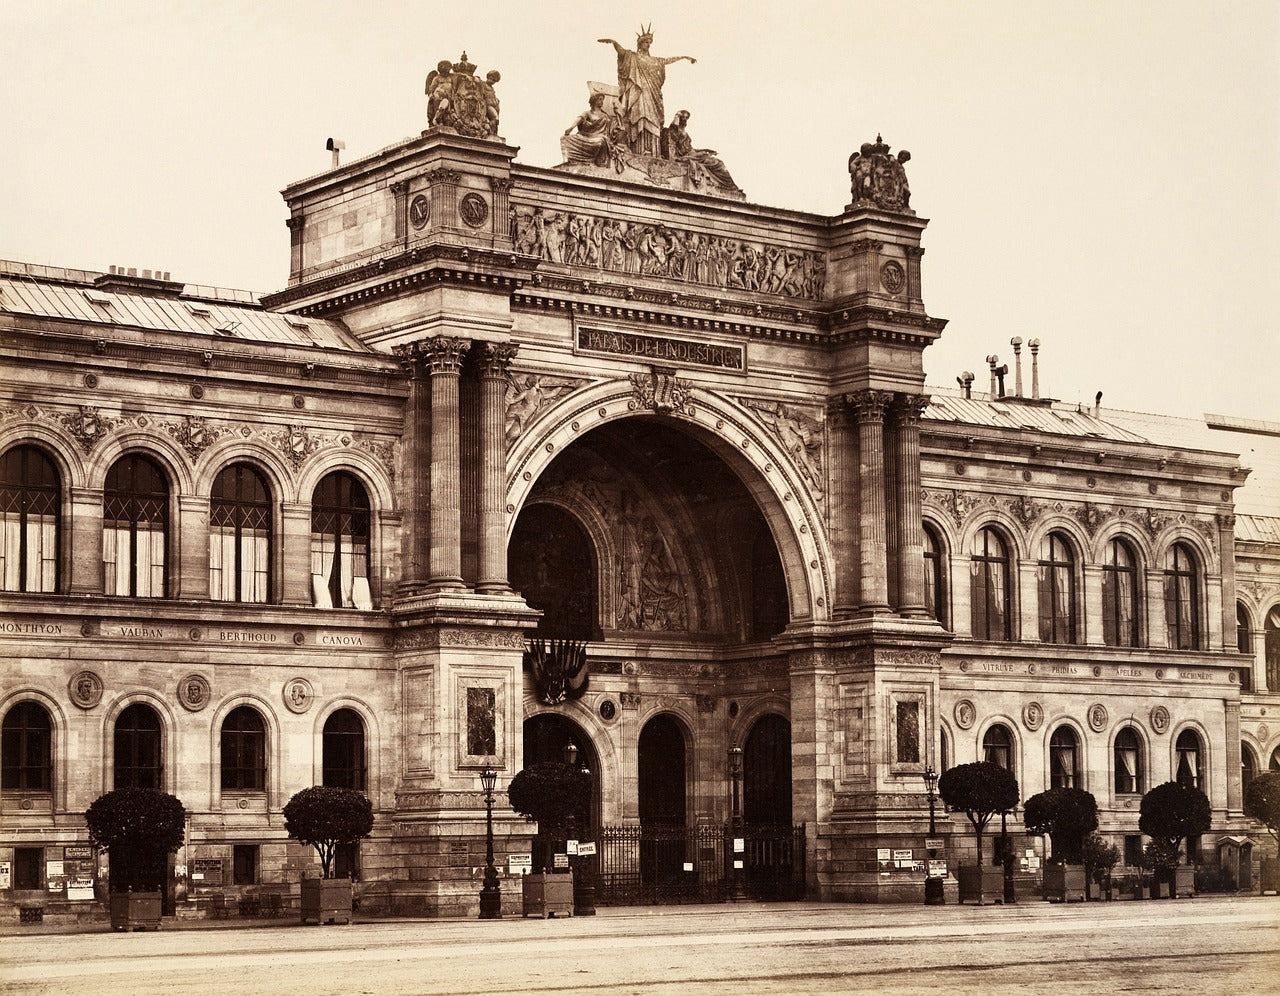 1855 Paris World's Fair